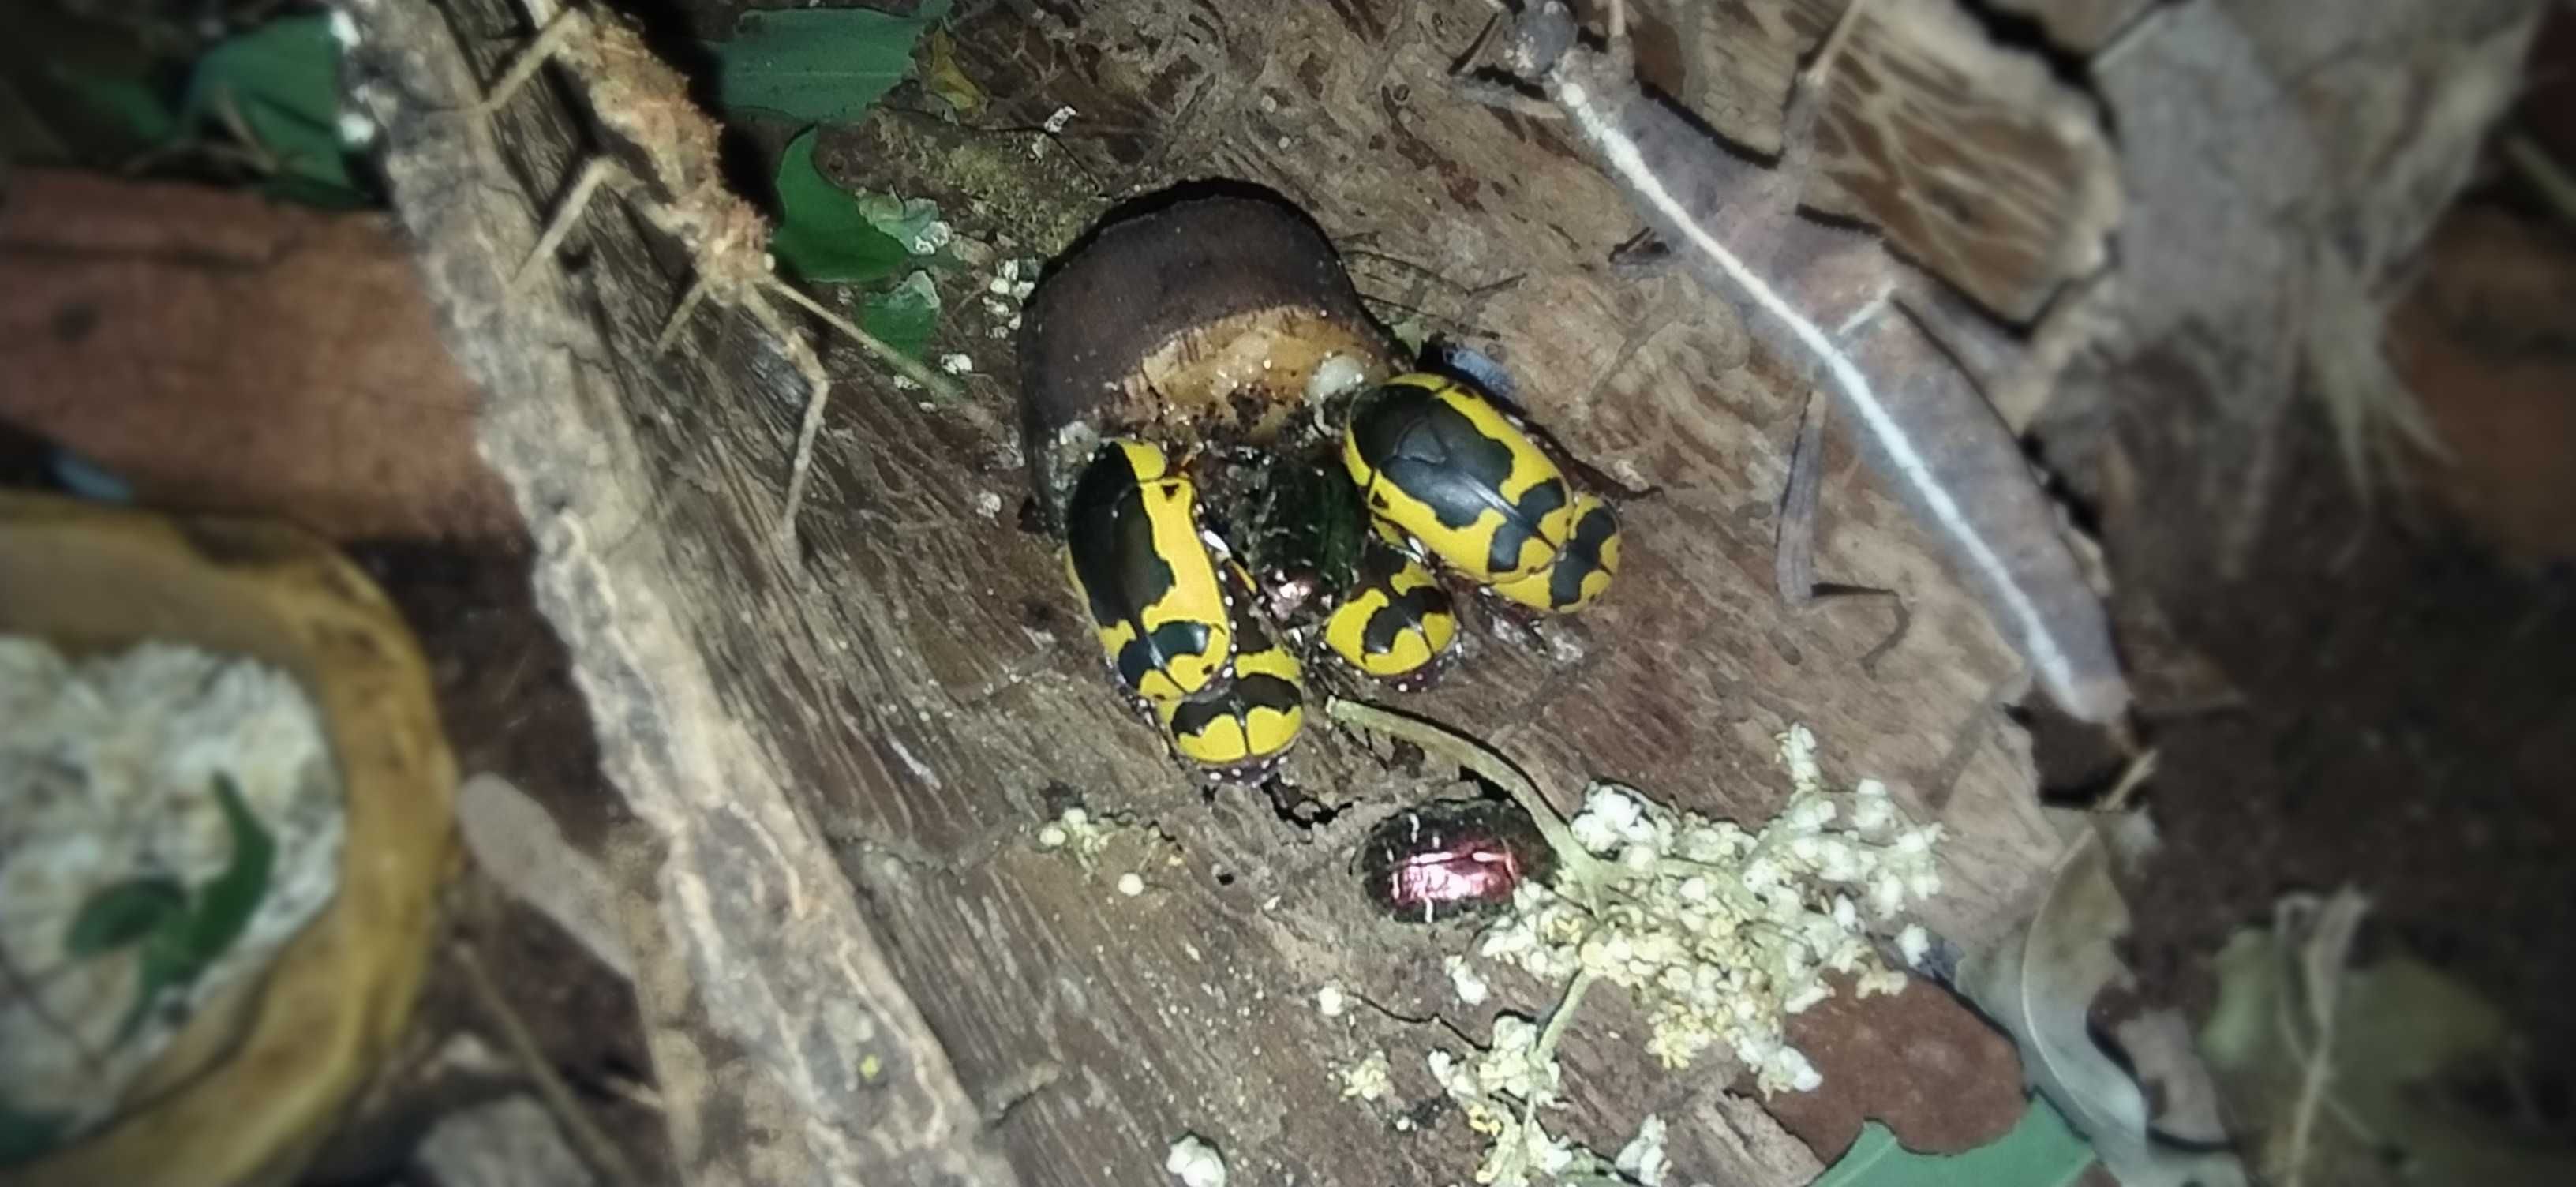 Pachnoda Kruszczyca afrykańska chrząszcz Dorosłe chrząszcze !